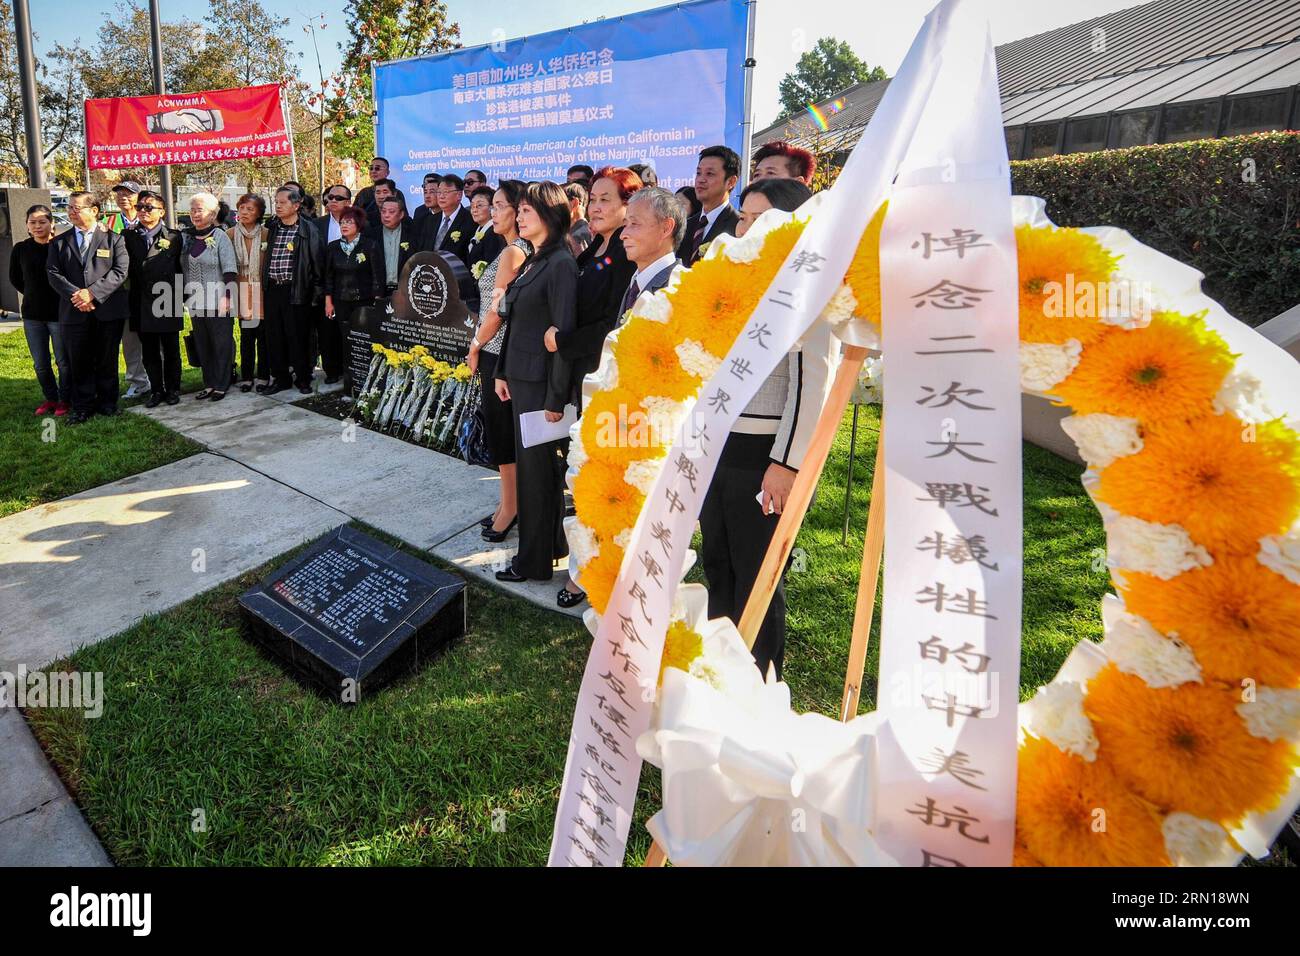 Les Chinois d'outre-mer posent pour une photo après un mémorial pour les victimes du massacre de Nanjing à Los Angeles, aux États-Unis, le 6 décembre 2014. Les troupes japonaises ont capturé Nanjing à la fin de 1937, tuant environ 300 000 personnes en plus de 40 jours. (Lyi) U.S.-LOS agelles-OVERSEAS CHINESE-NANJING MASSACRE-COMMÉMORATION ZhangxChaoqun PUBLICATIONxNOTxINxCHN les Chinois d'outre-mer posent pour une photo après un mémorial pour les victimes du massacre de Nanjing à Los Angeles les États-Unis DEC 6 2014 troupes japonaises ont capturé Nanjing à la fin de 1937 tuant environ 300 000 célébrités au cours de plus de Banque D'Images